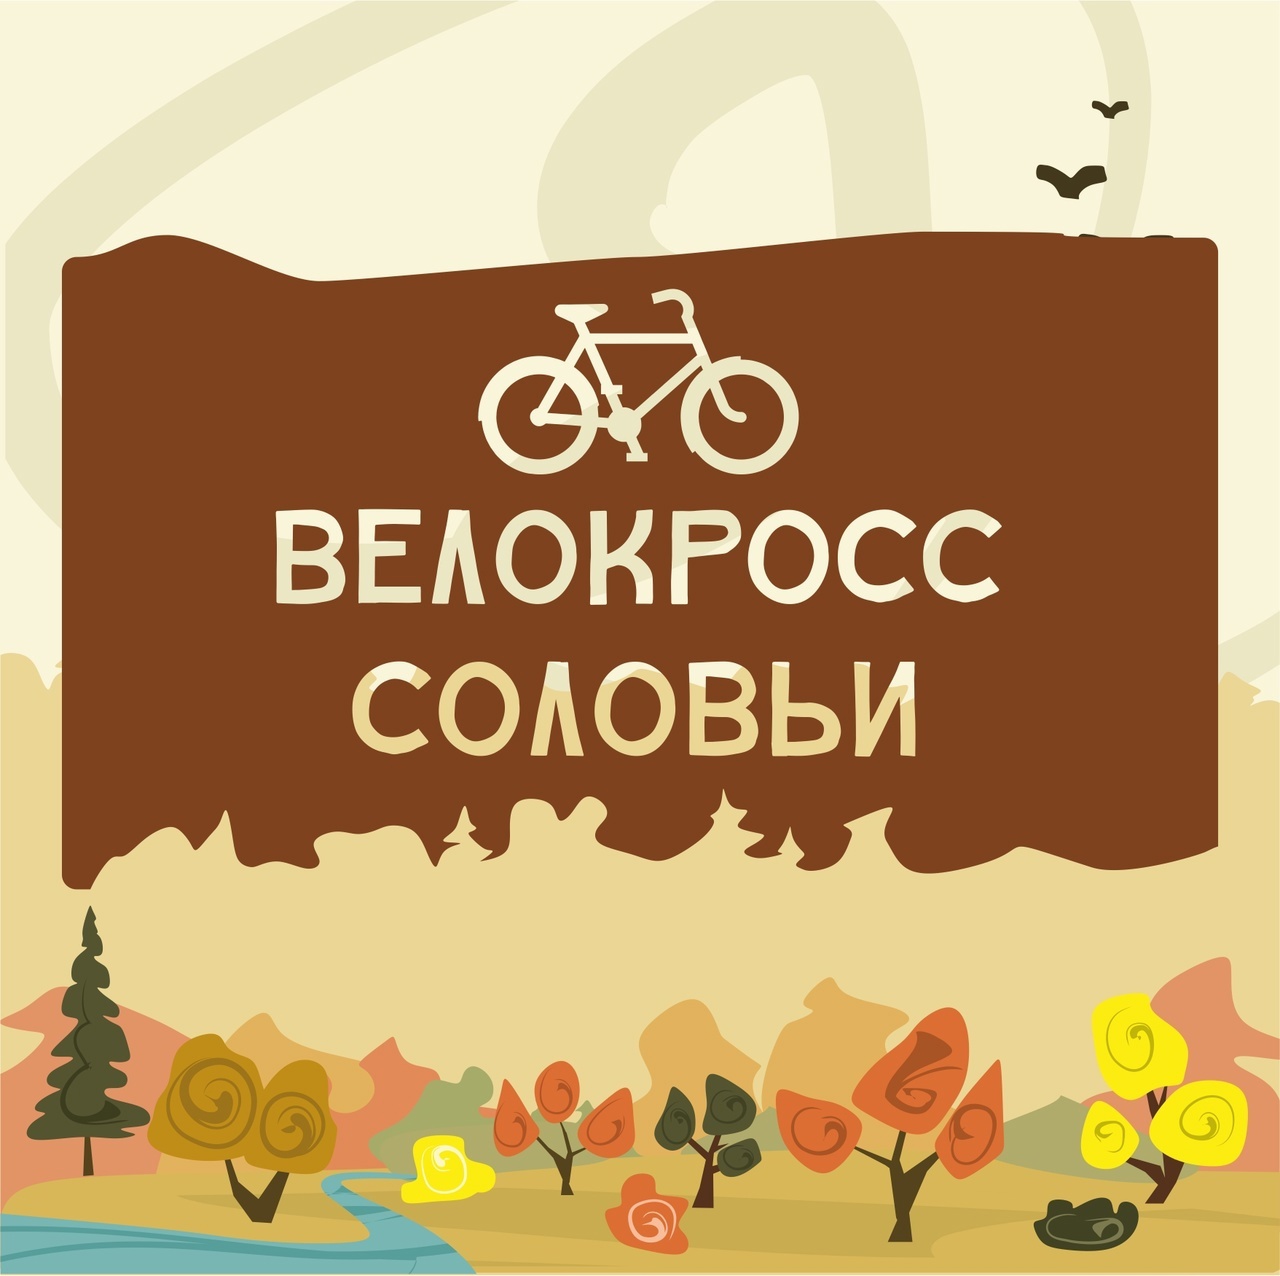 В Брянске пройдет велокросс «Соловьи»